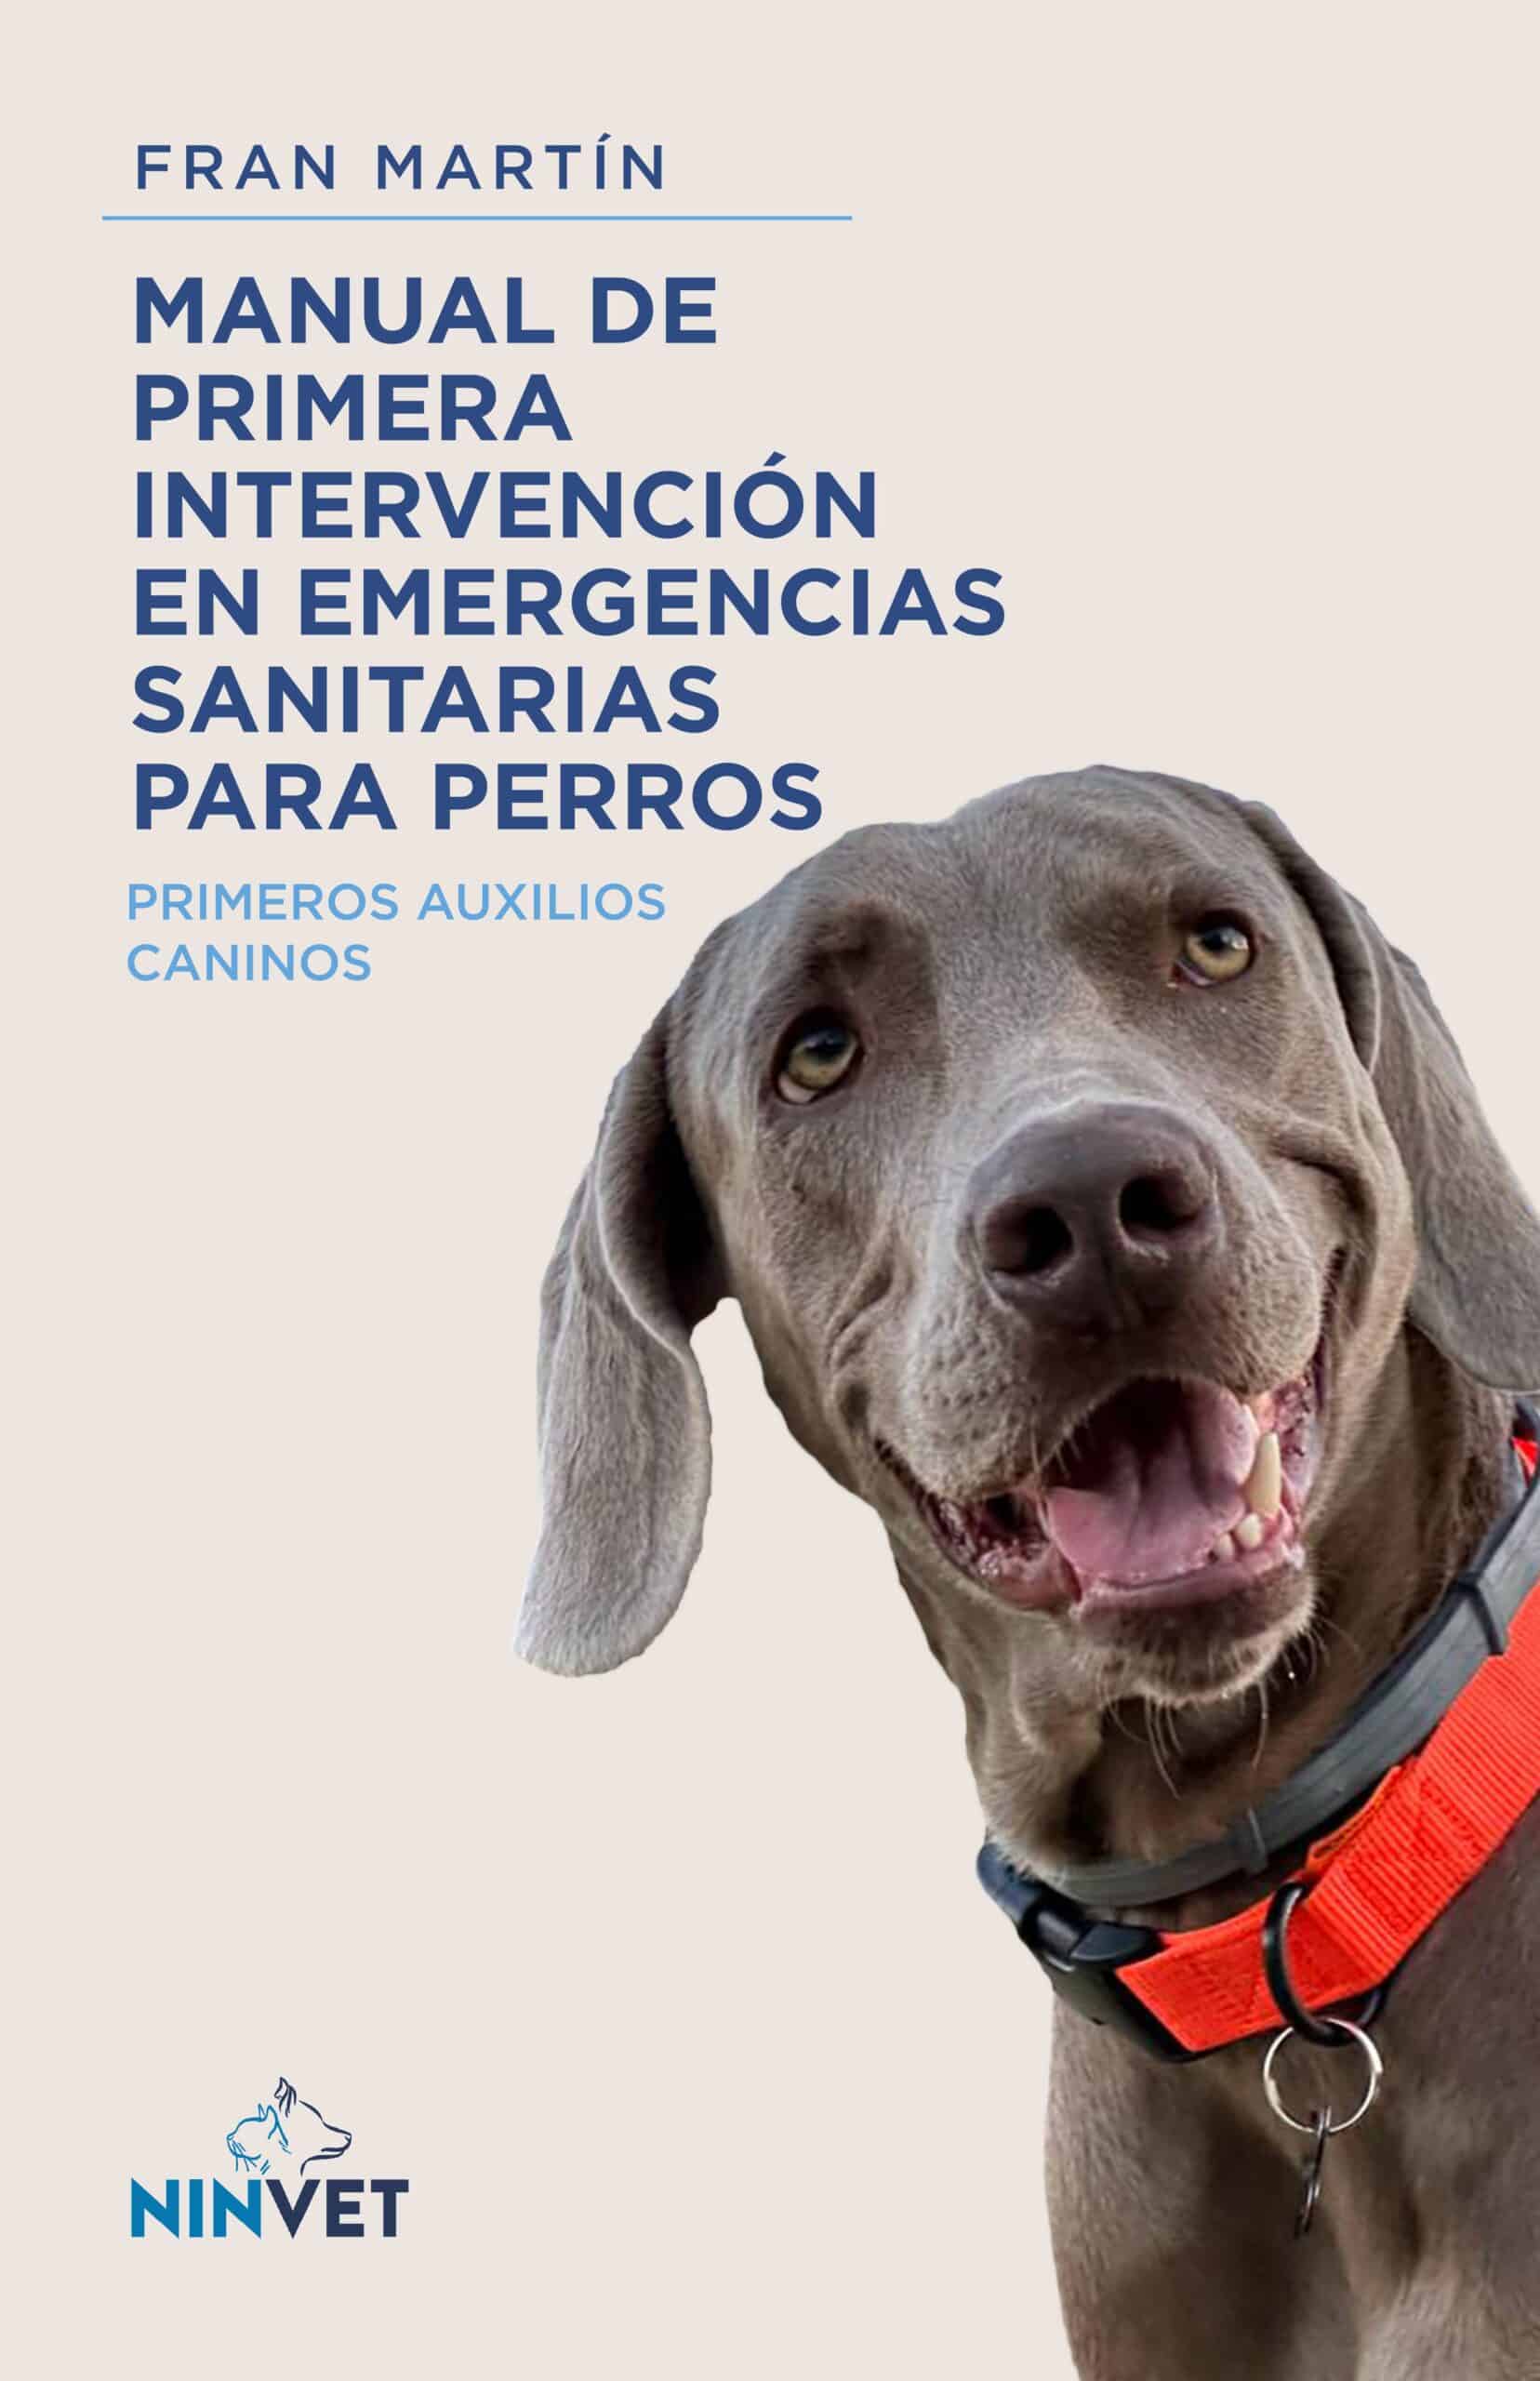 Manual de primera intervención en emergencias sanitarias para perros, de Francisco Martín